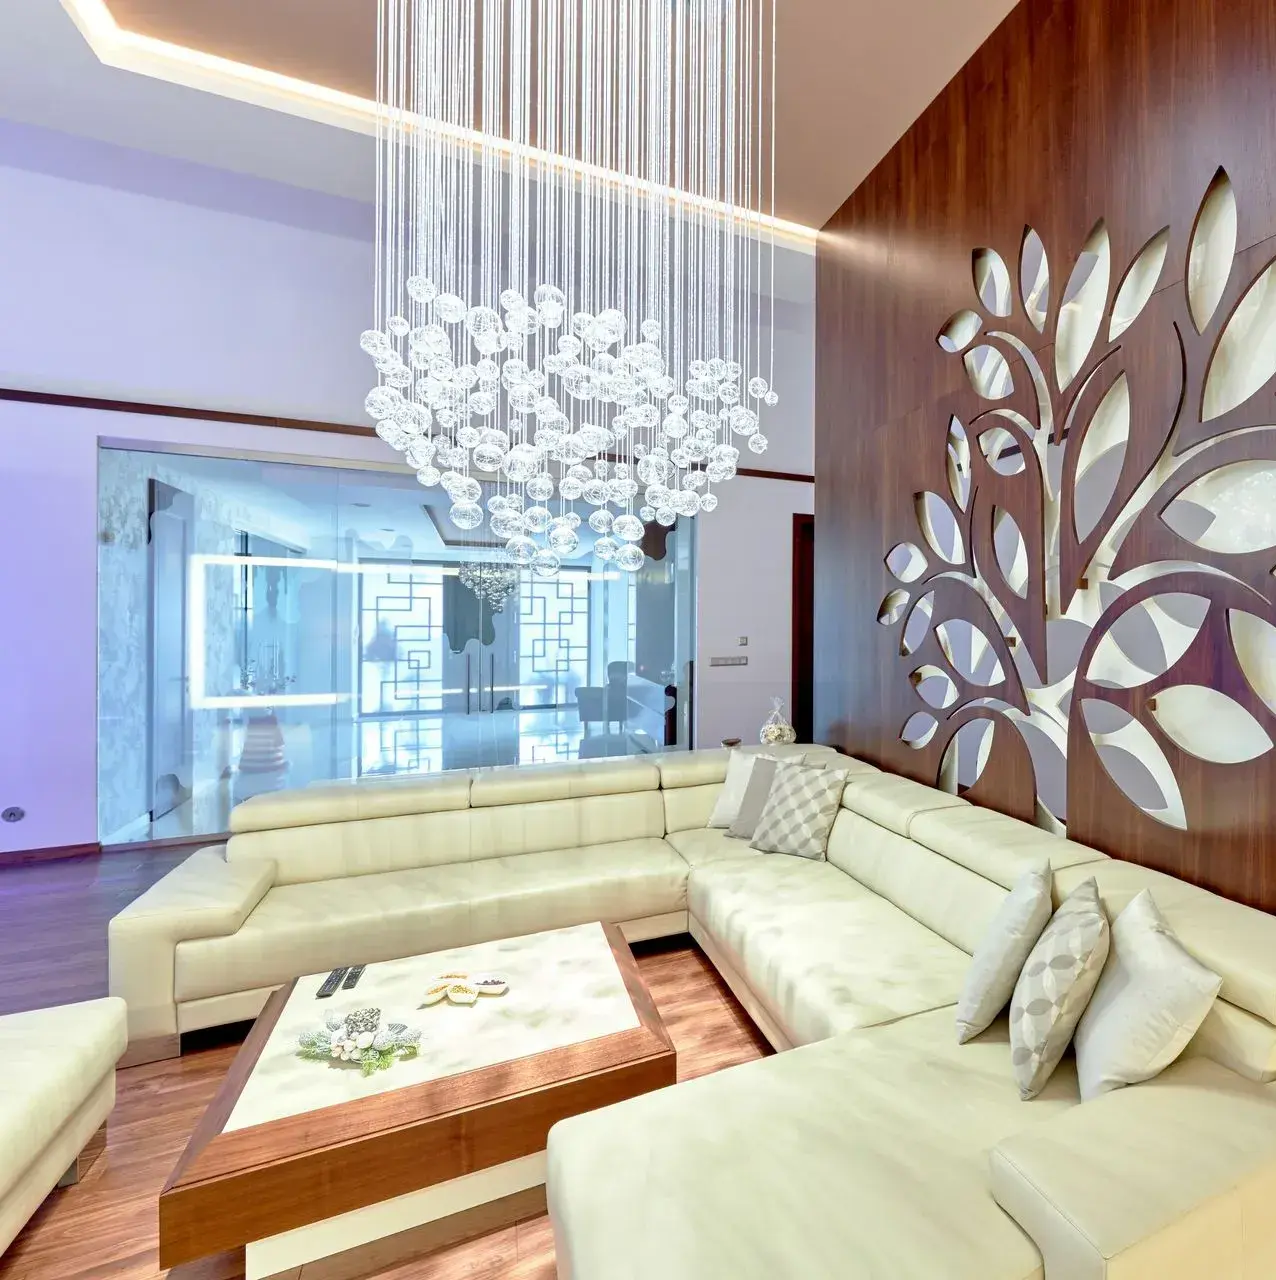 Luxury livingroom light chandelier custom made fibre optic lighting